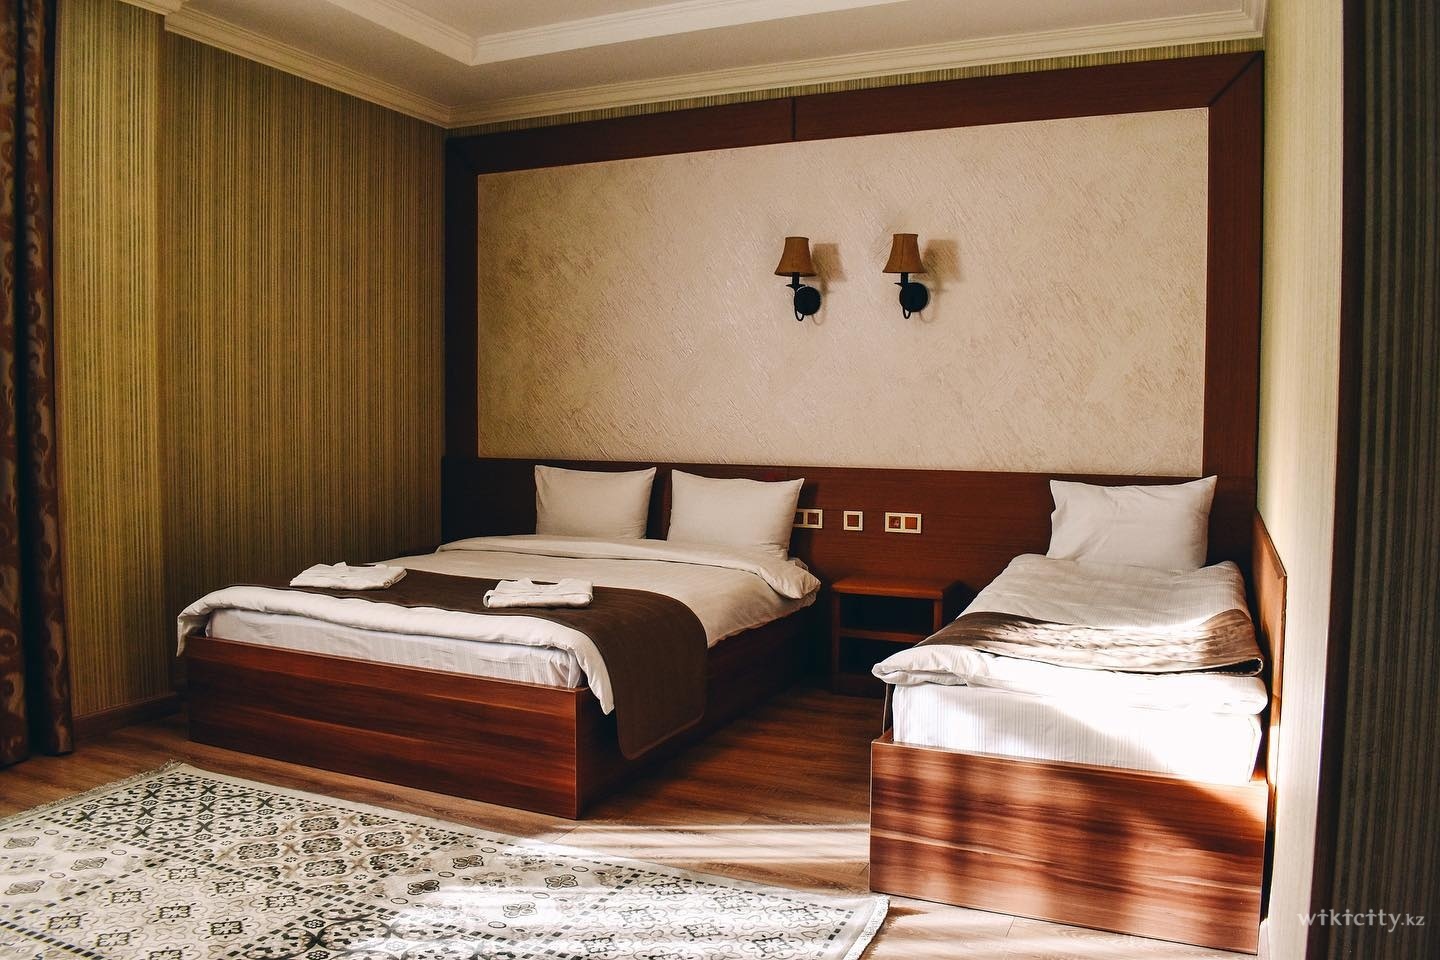 Фото Sacvoyage Hotel & Soul SPA - Алматы. Двухместный номер